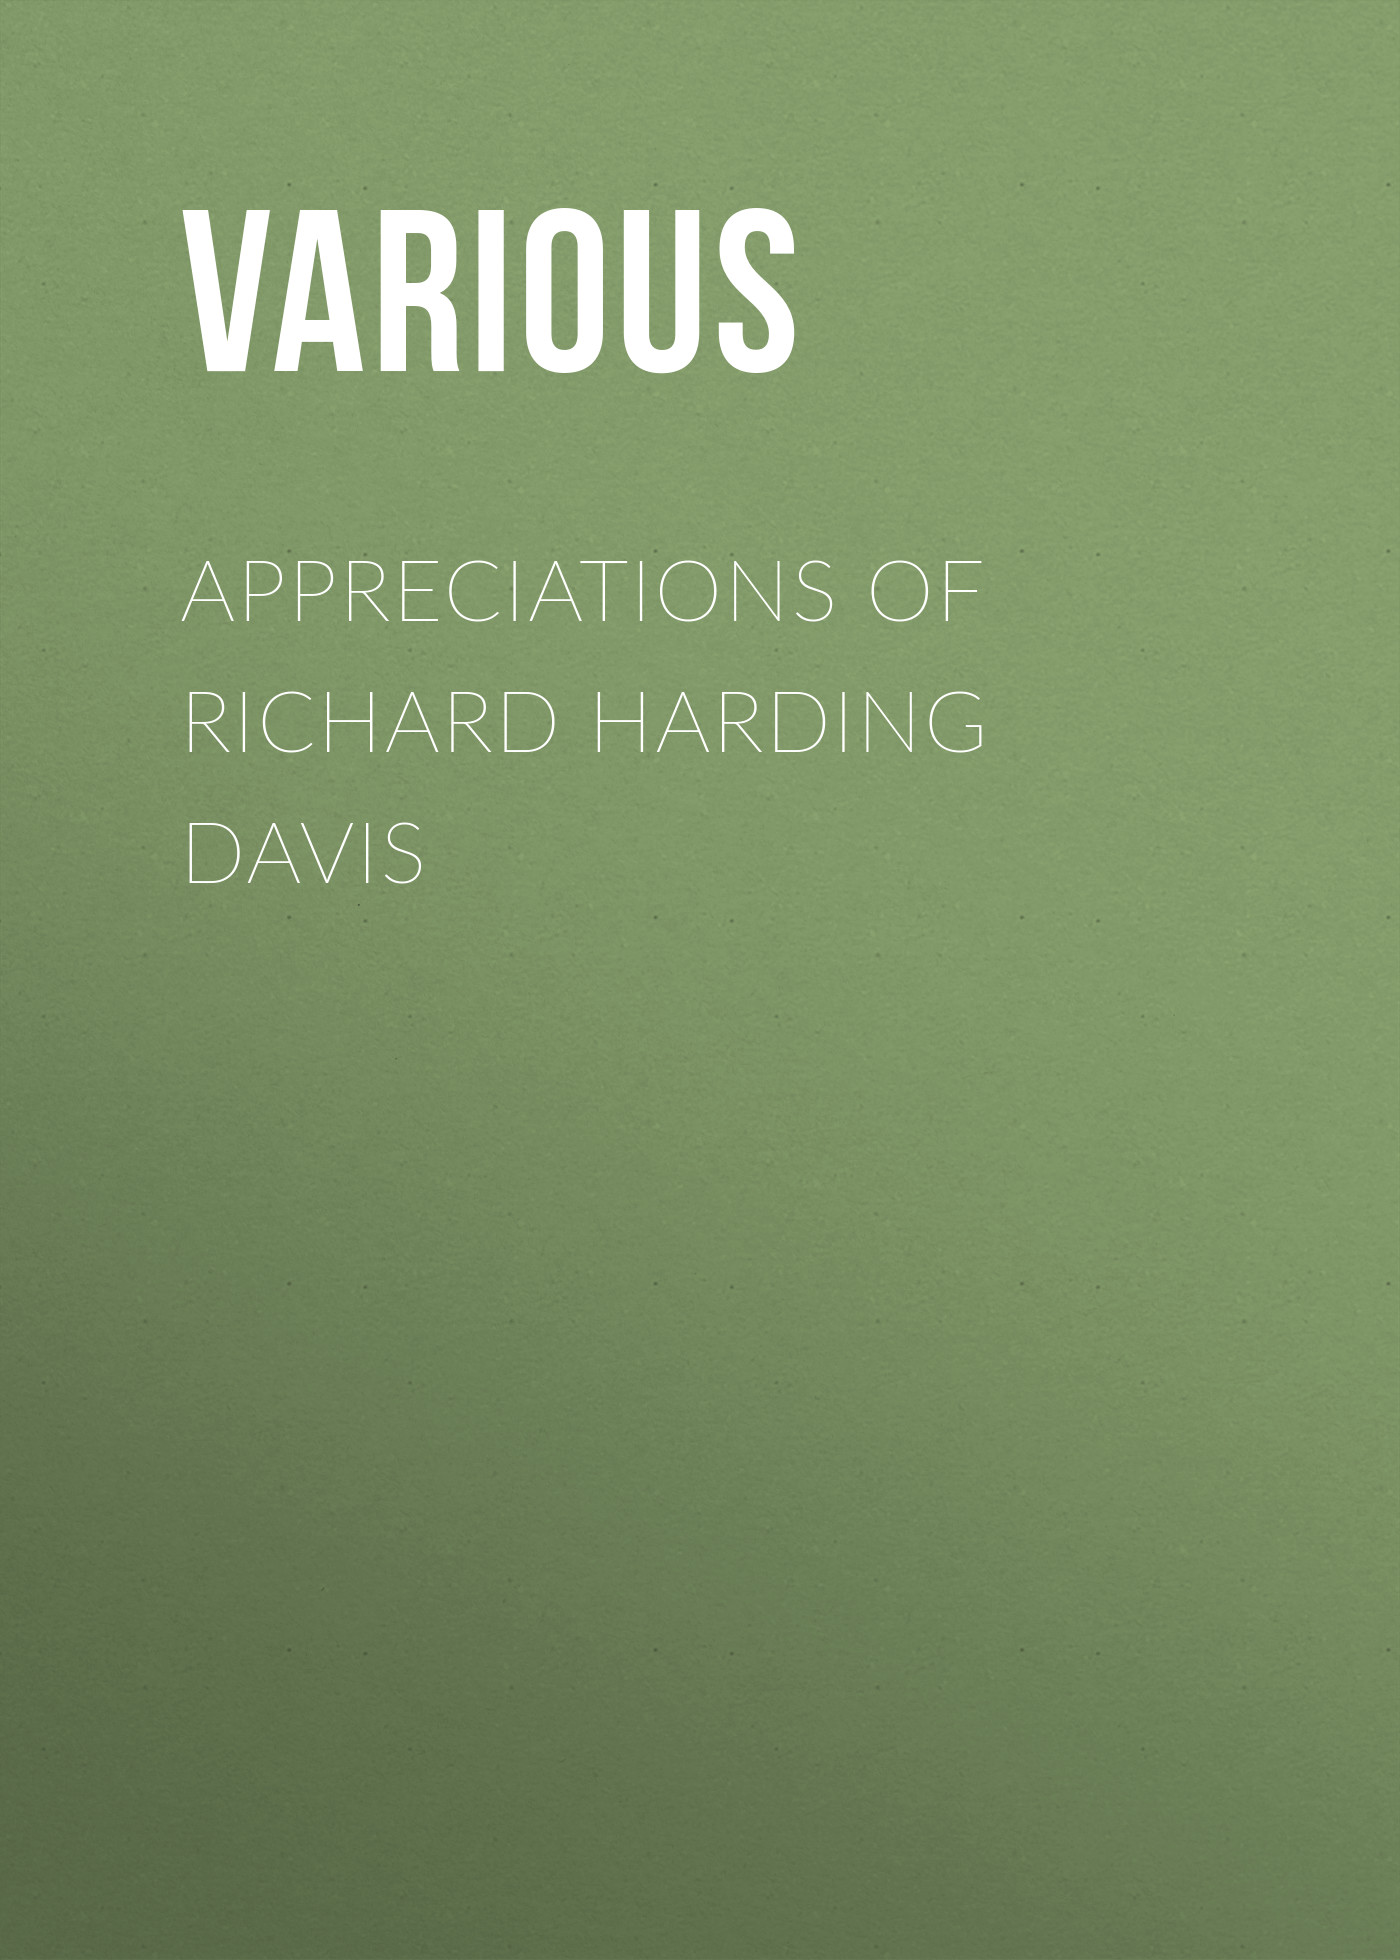 Книга Appreciations of Richard Harding Davis из серии , созданная  Various, может относится к жанру Биографии и Мемуары, Зарубежная старинная литература. Стоимость электронной книги Appreciations of Richard Harding Davis с идентификатором 35491831 составляет 0 руб.